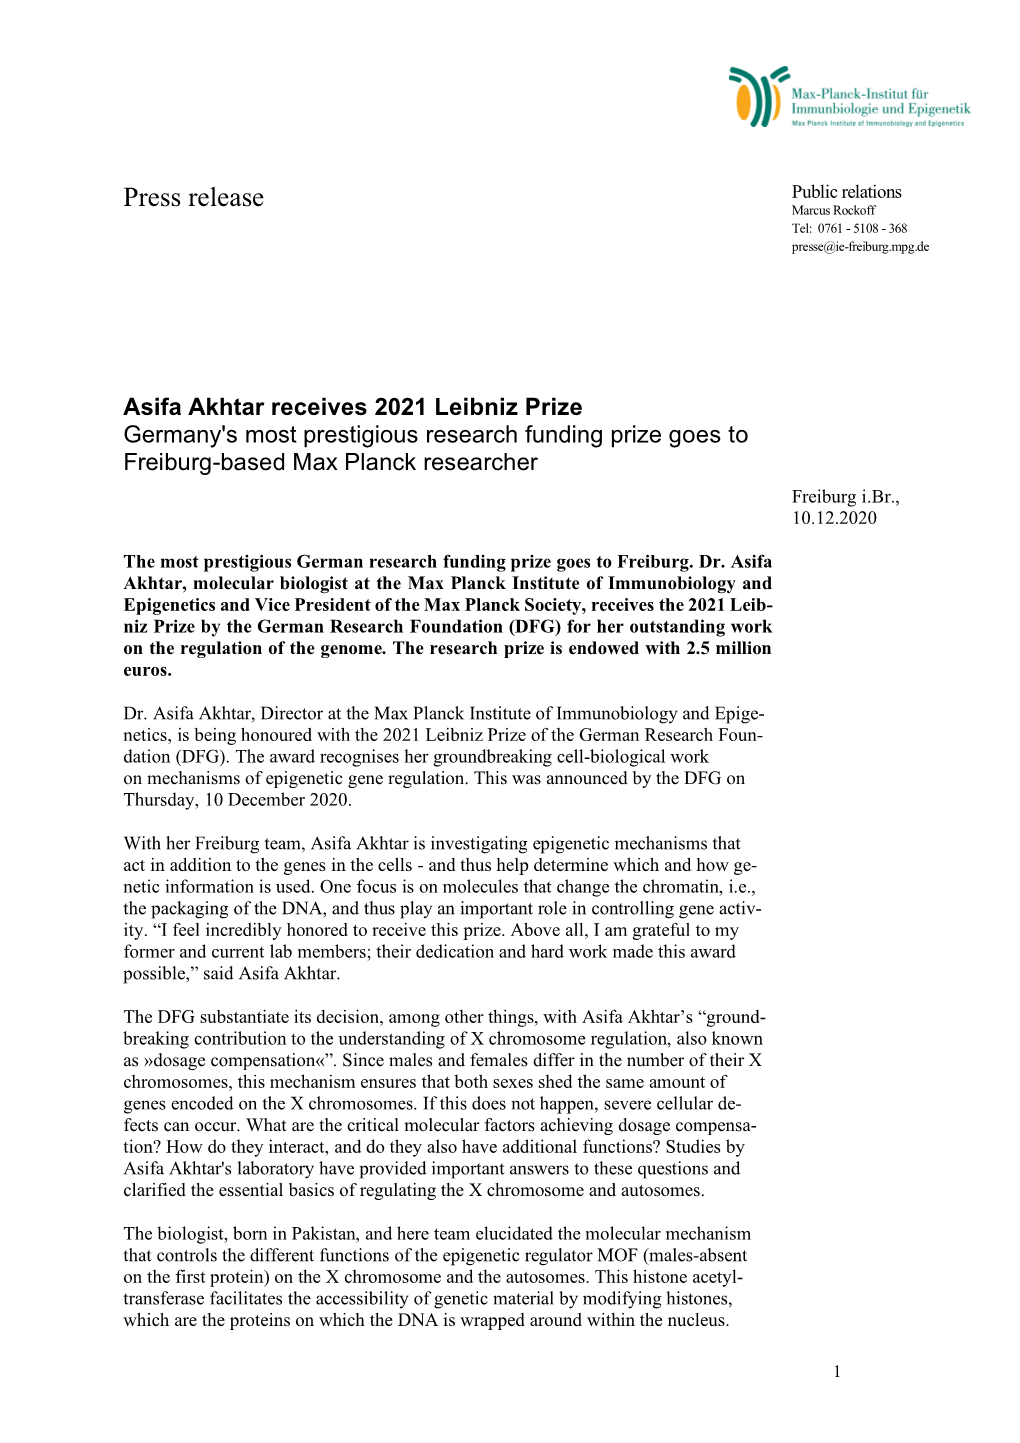 Press Release: 2021 Leibniz Prize to Asifa Akhtar